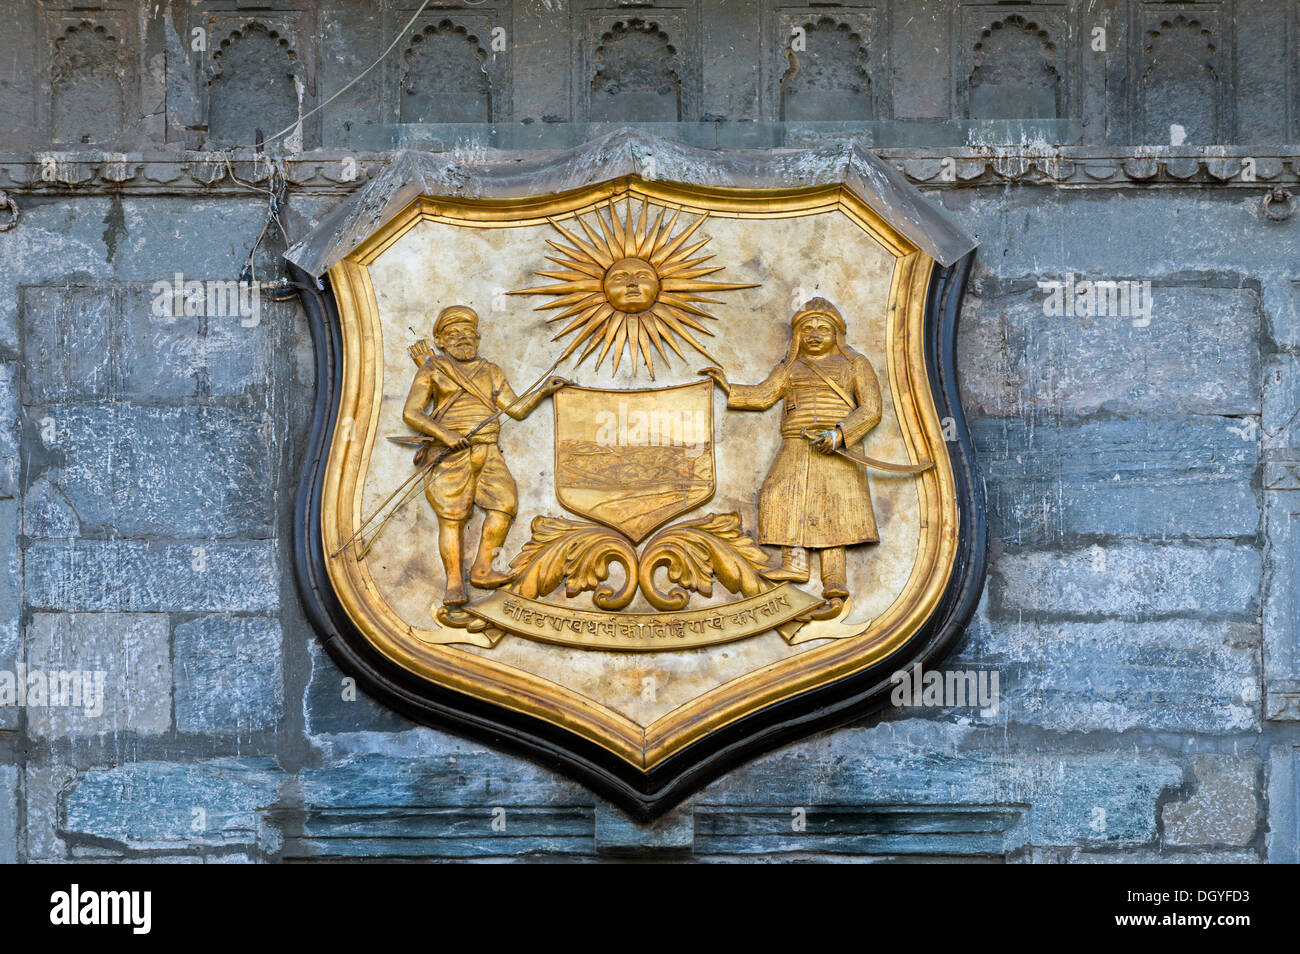 Armoiries de l'Maharana d'Udaipur et de Mewar, Palais de la ville de la Maharana d'Udaipur, Udaipur, Rajasthan, Inde Banque D'Images